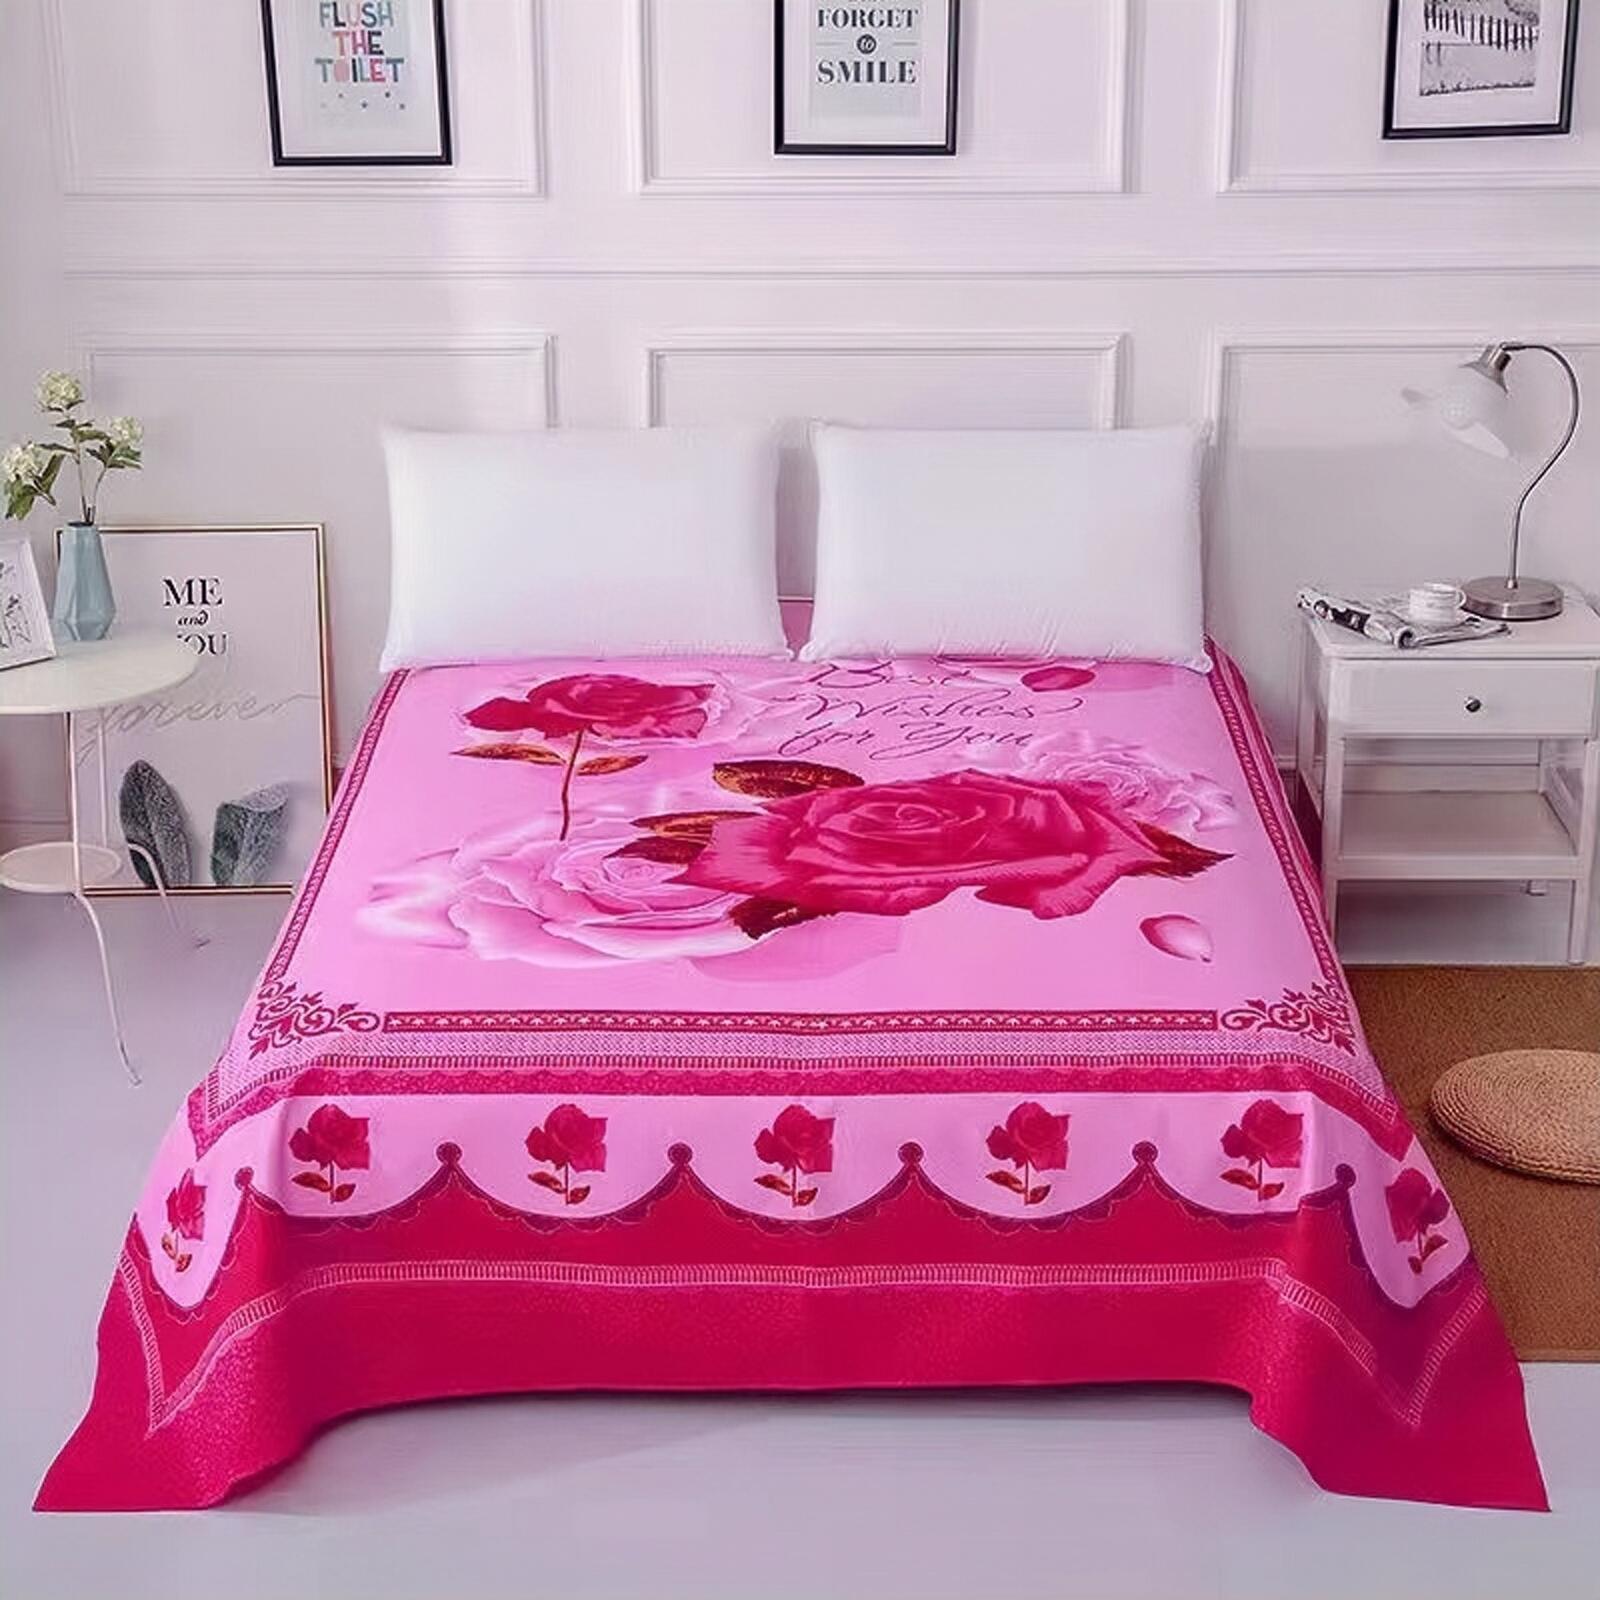 清仓处理仿纯棉加厚磨毛床单床盖单件2米4双人加大大版花3D床单